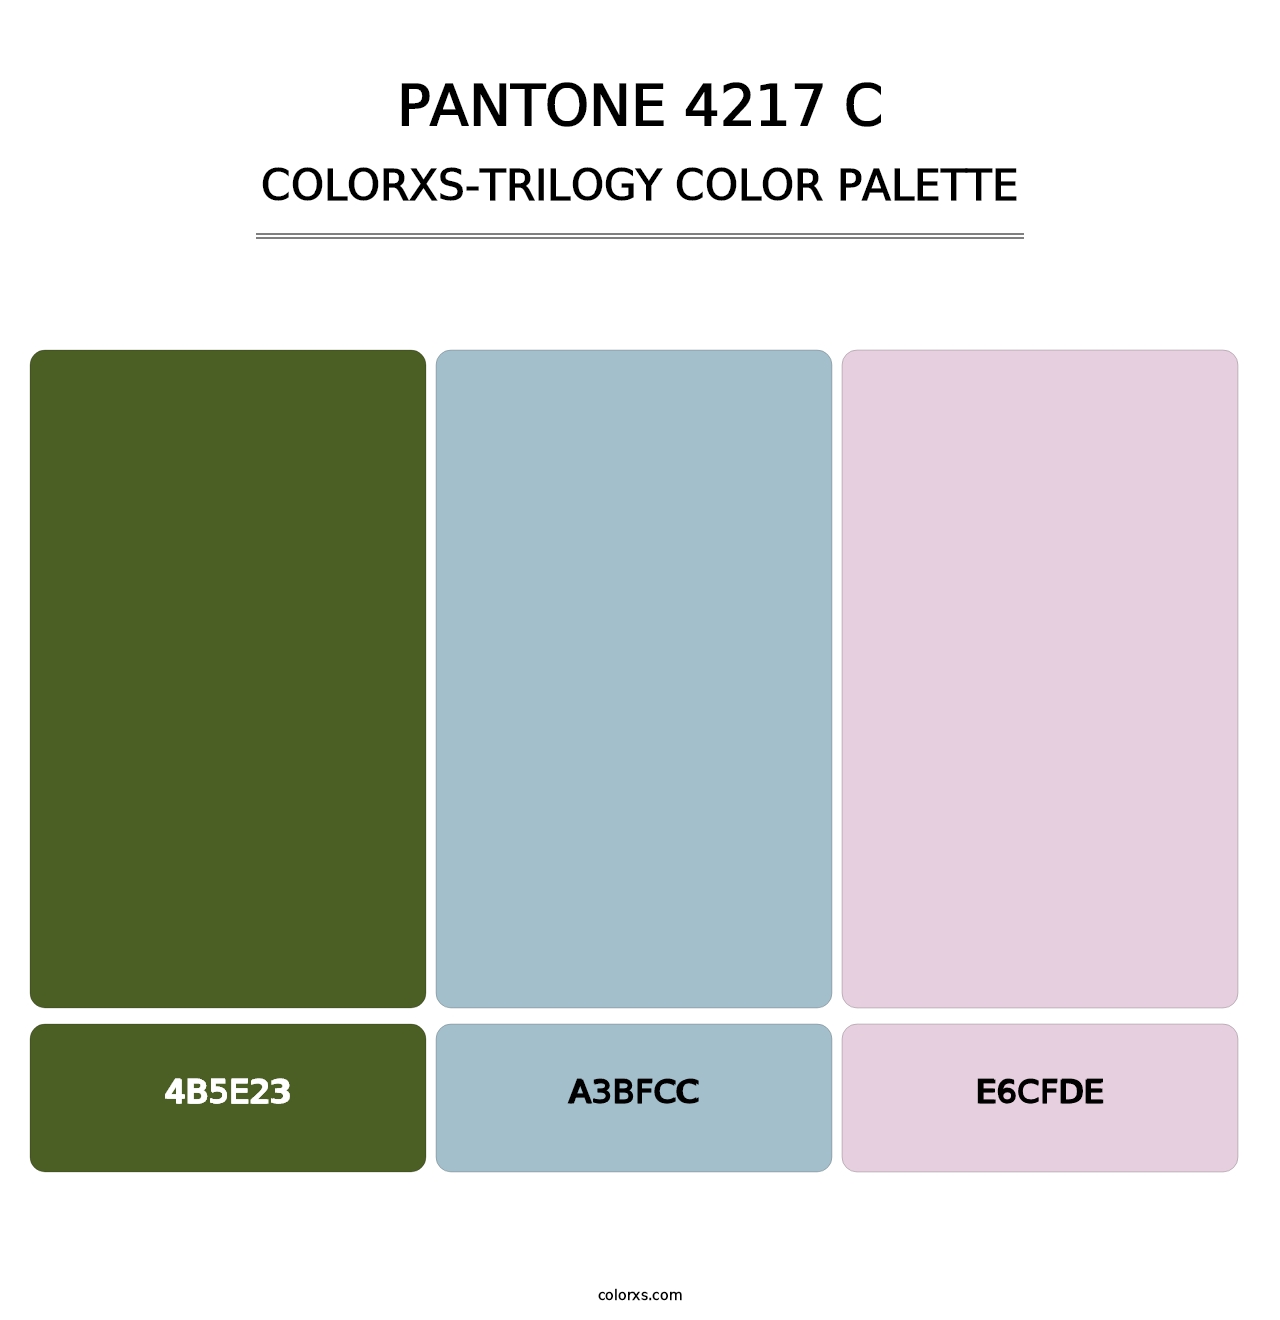 PANTONE 4217 C - Colorxs Trilogy Palette